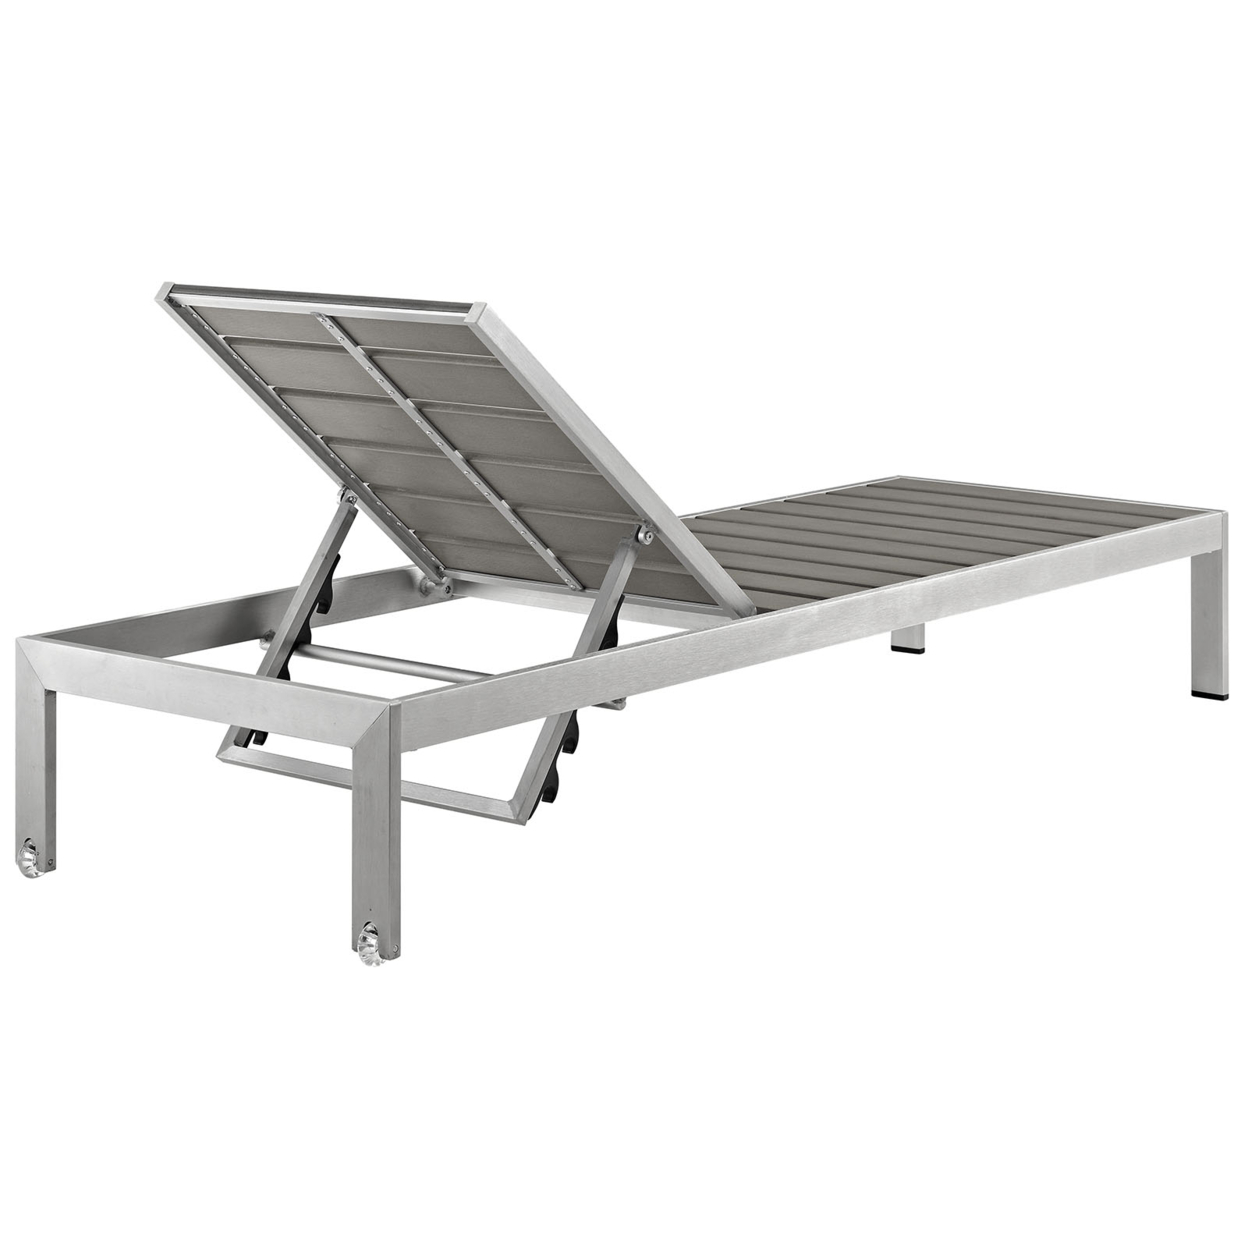 Silver Gray Shore Outdoor Patio Aluminum Chaise, EEI-2247-SLV-GRY